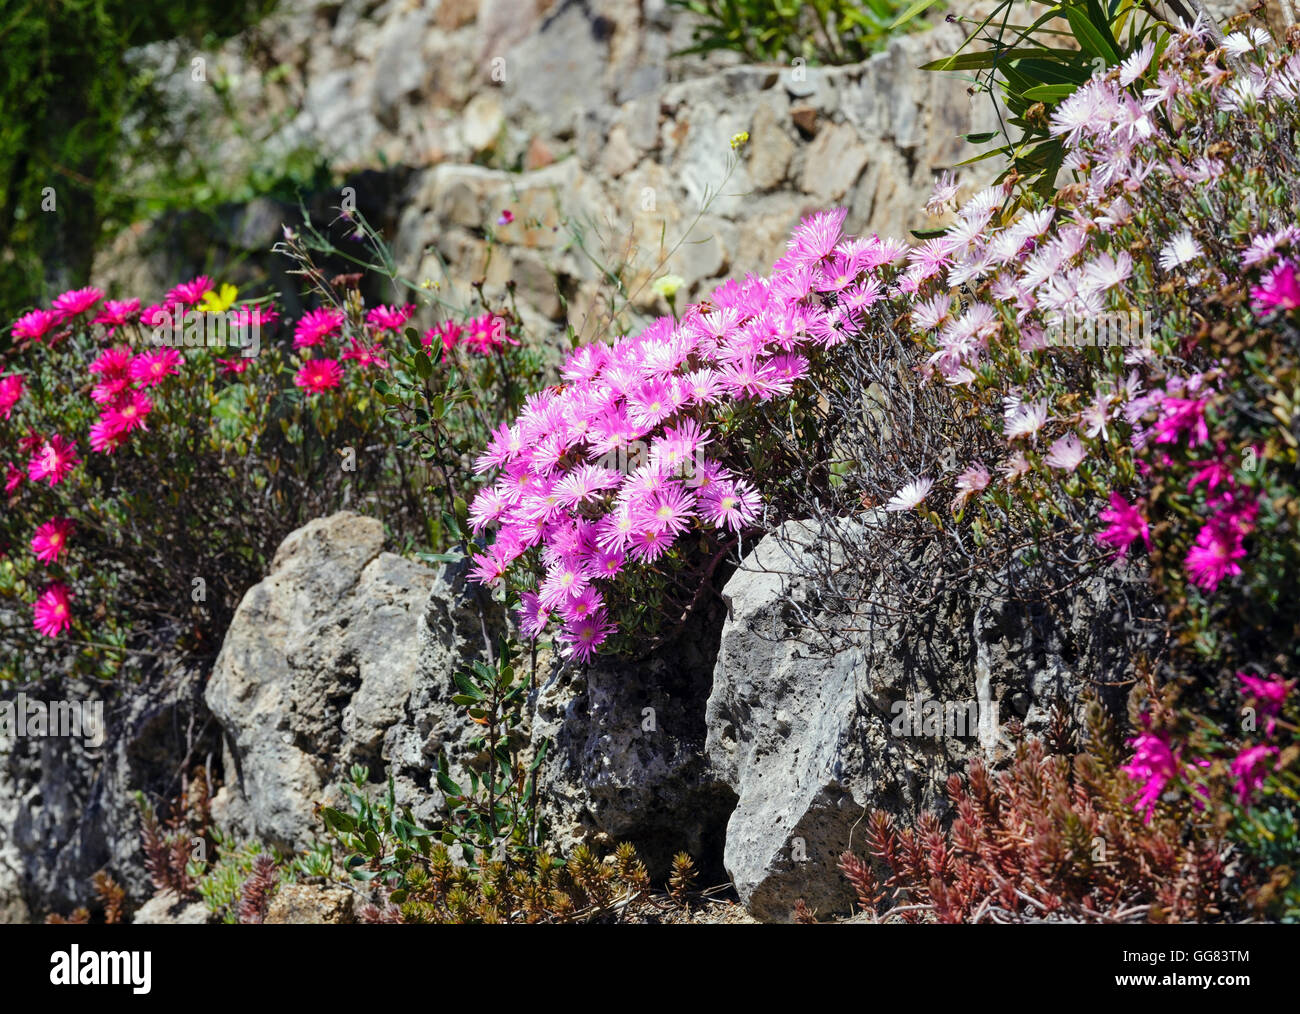 Carpobrotus (known as pigface, ice plant) with  pink large daisy-like flowers. Stock Photo